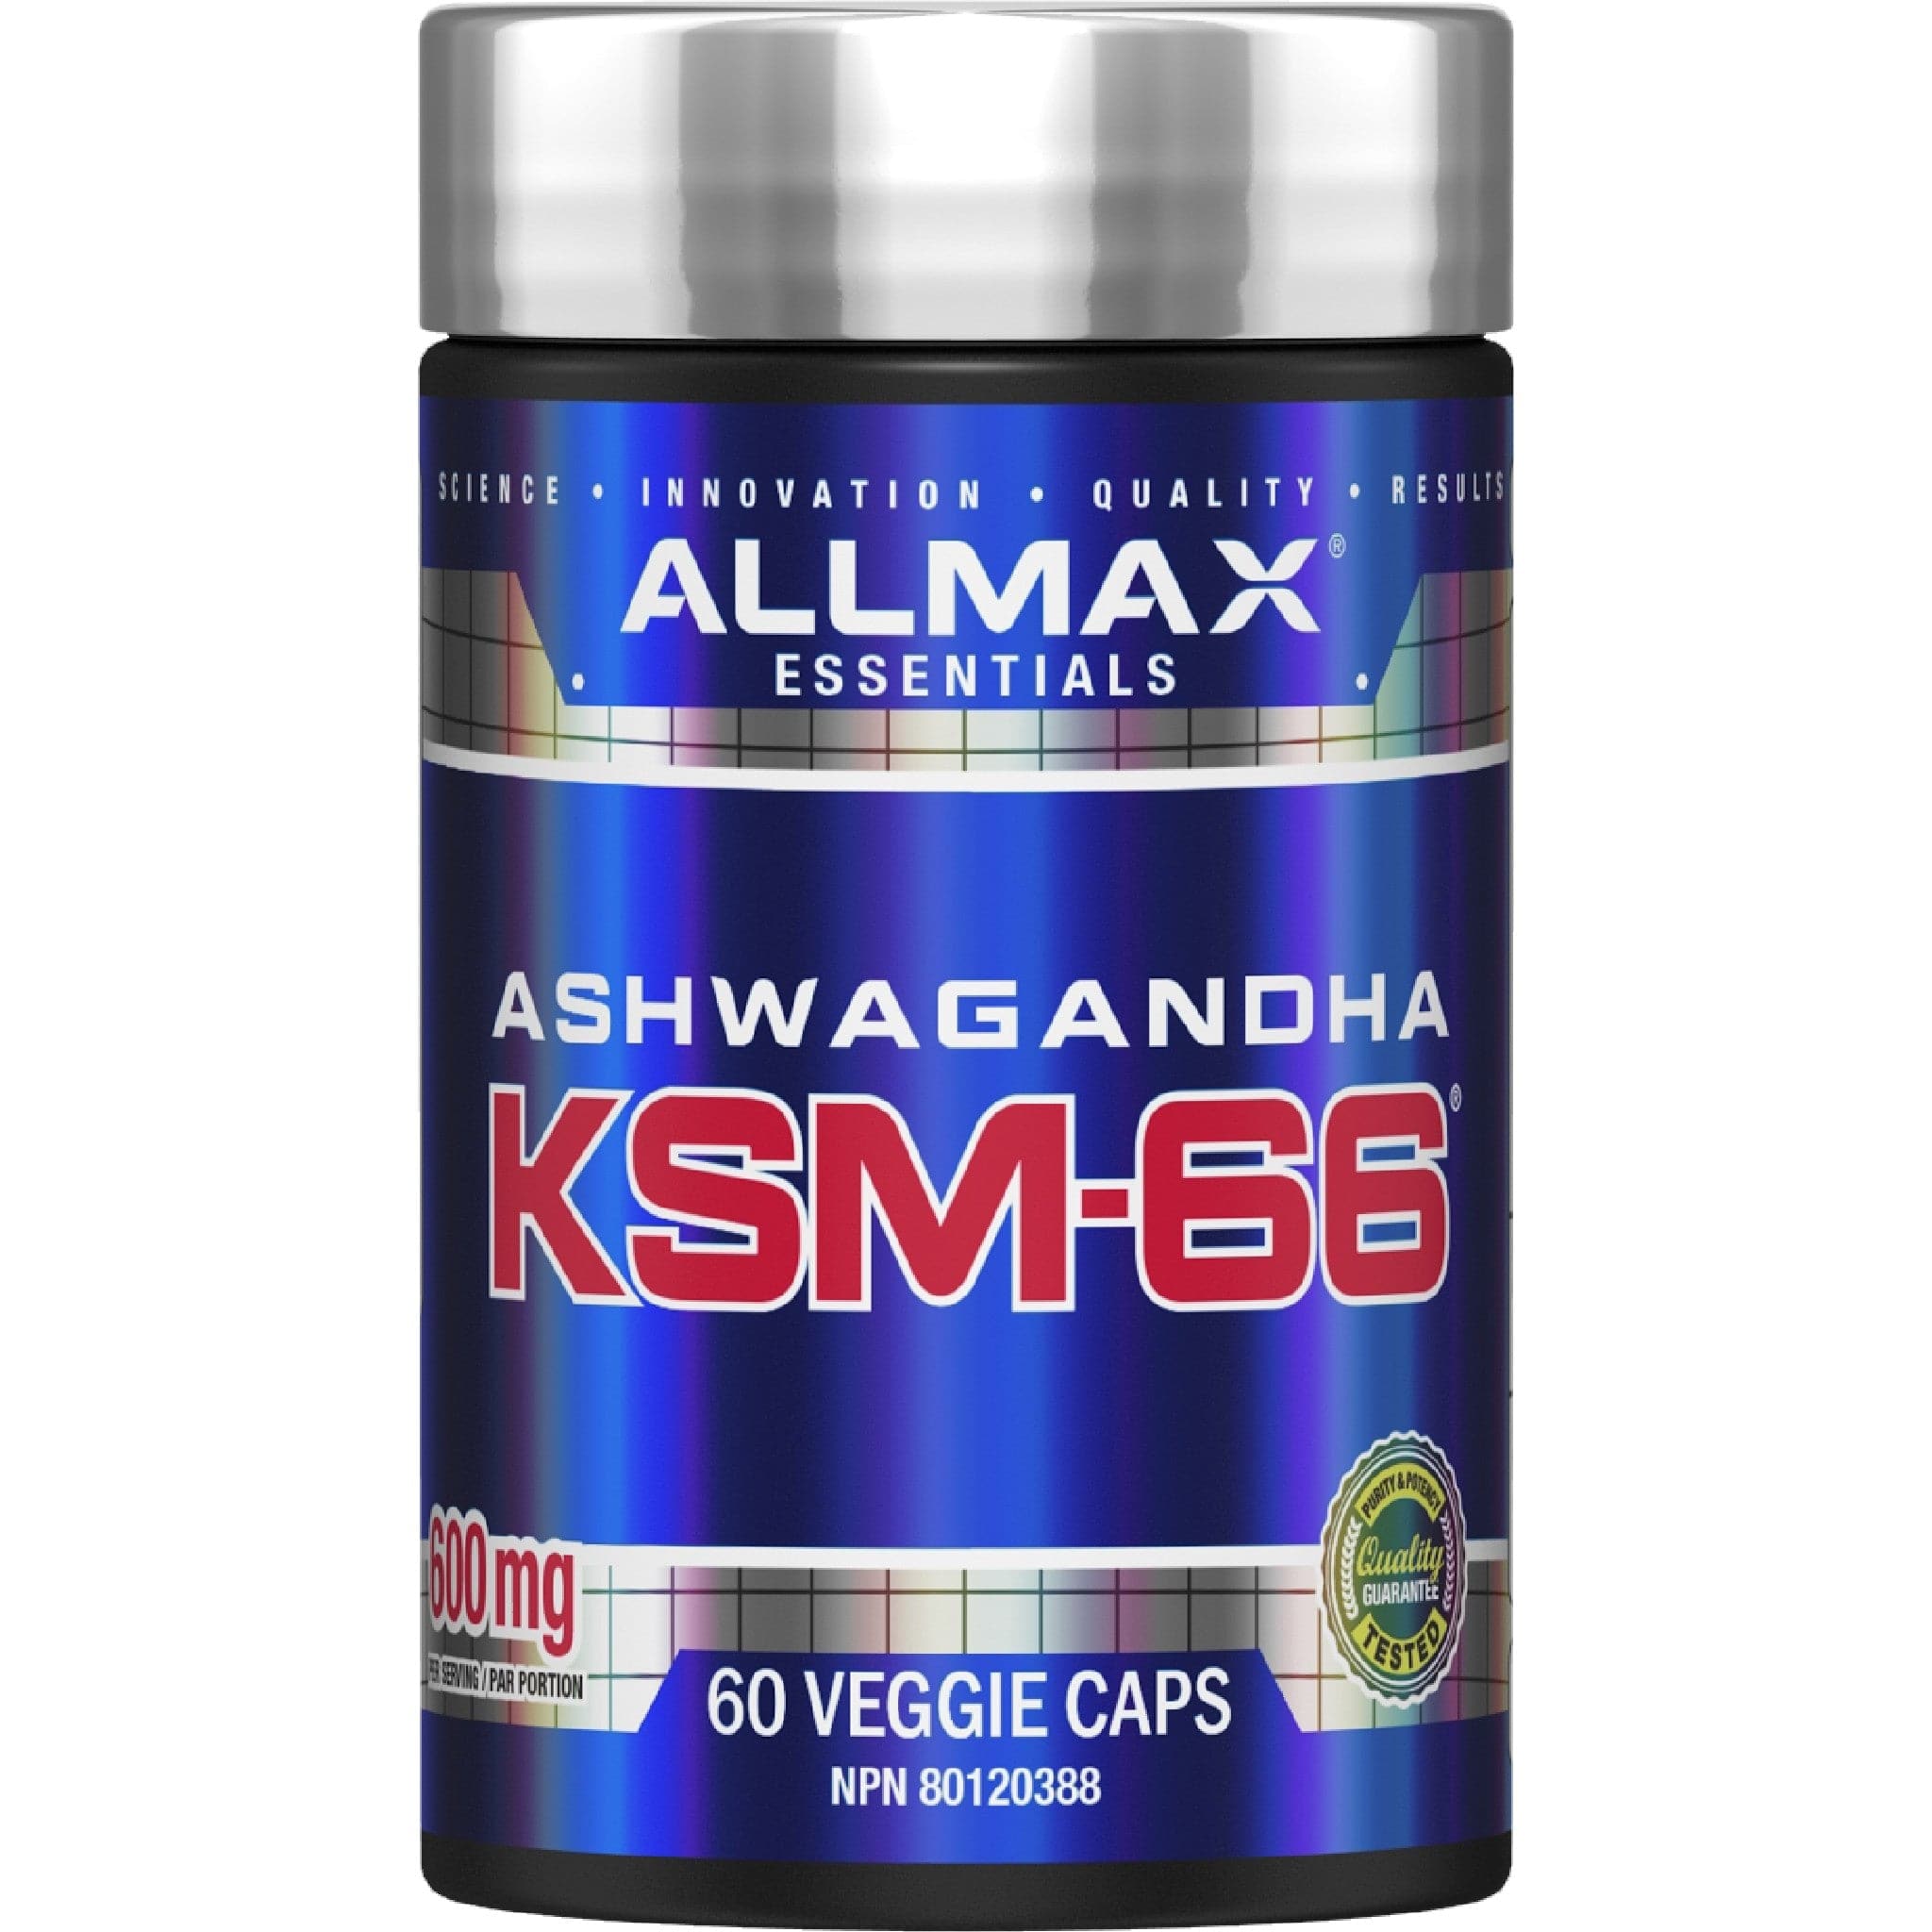 Allmax KSM-66 Ashwagandha 60 ct